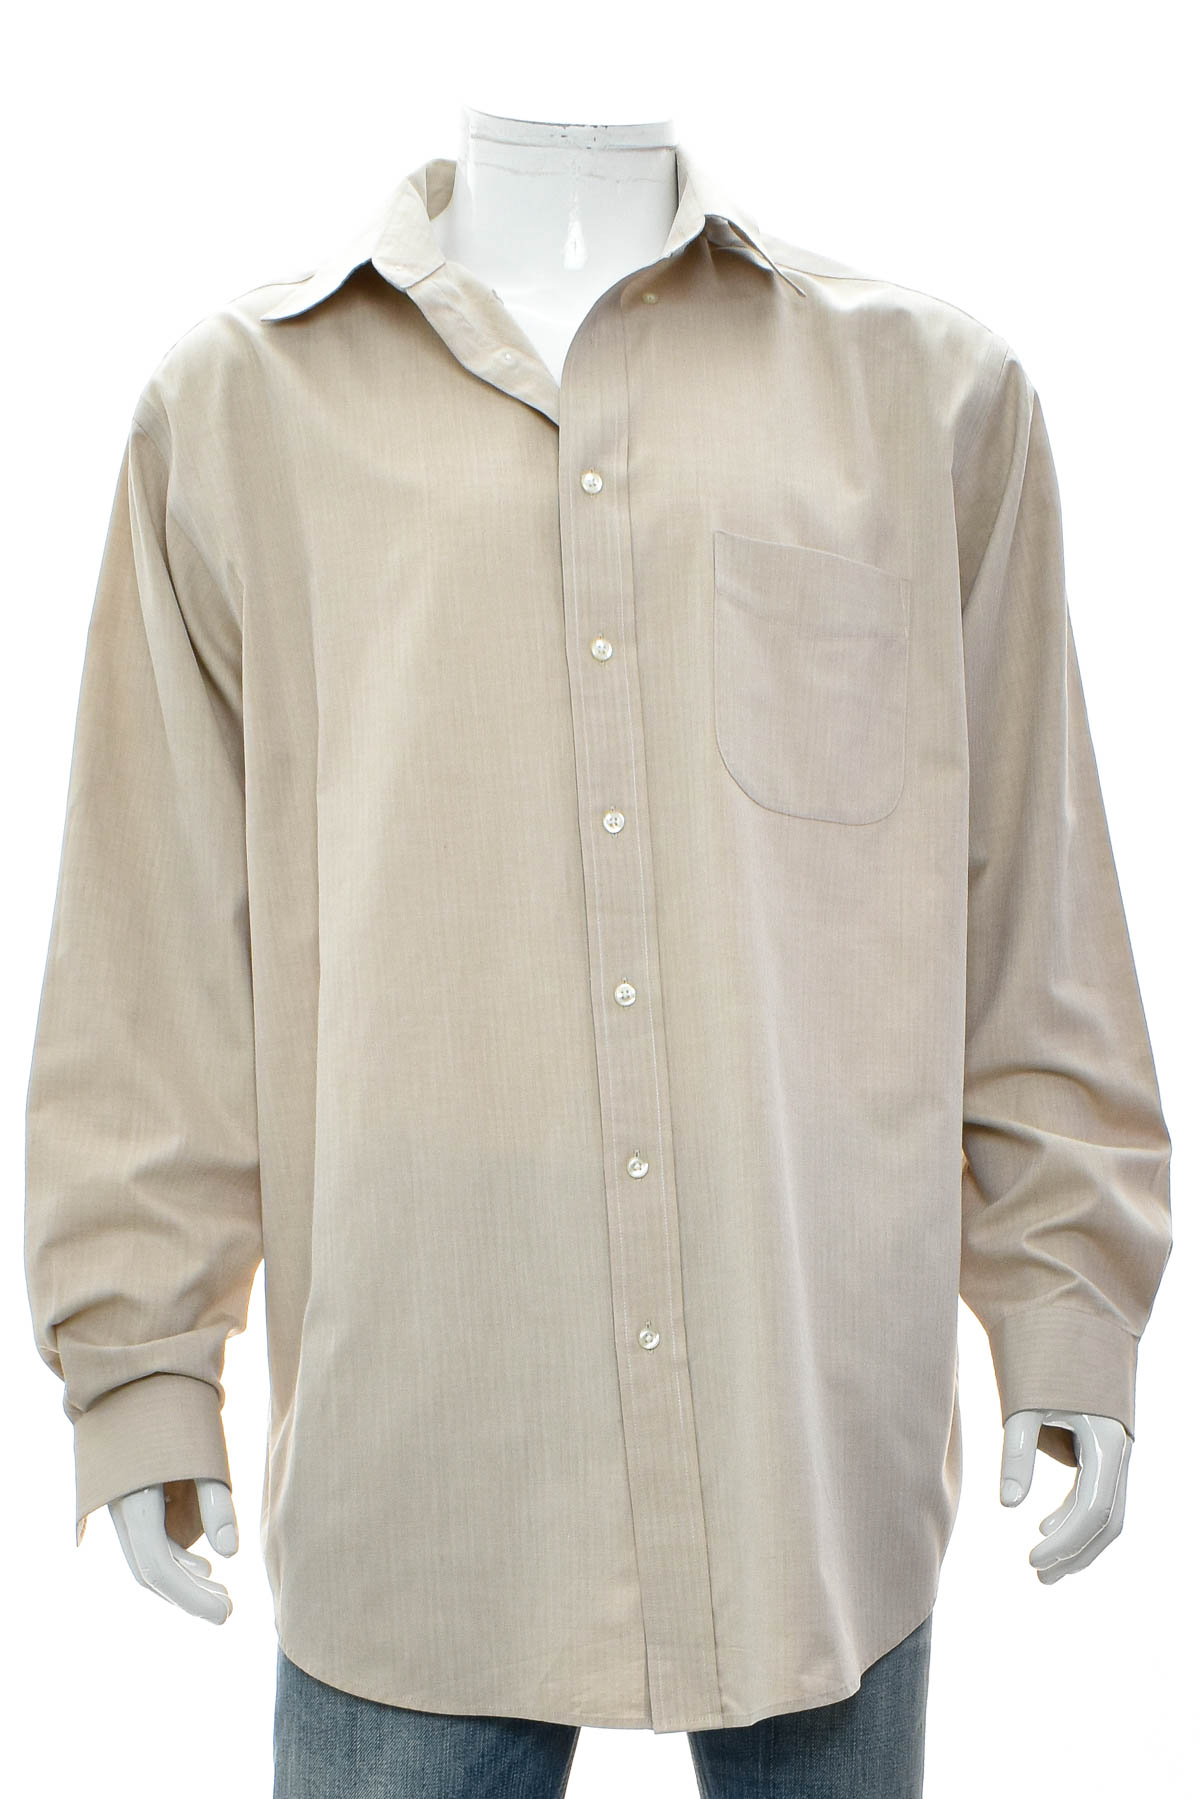 Ανδρικό πουκάμισο - Roundtree & Yorke - 0